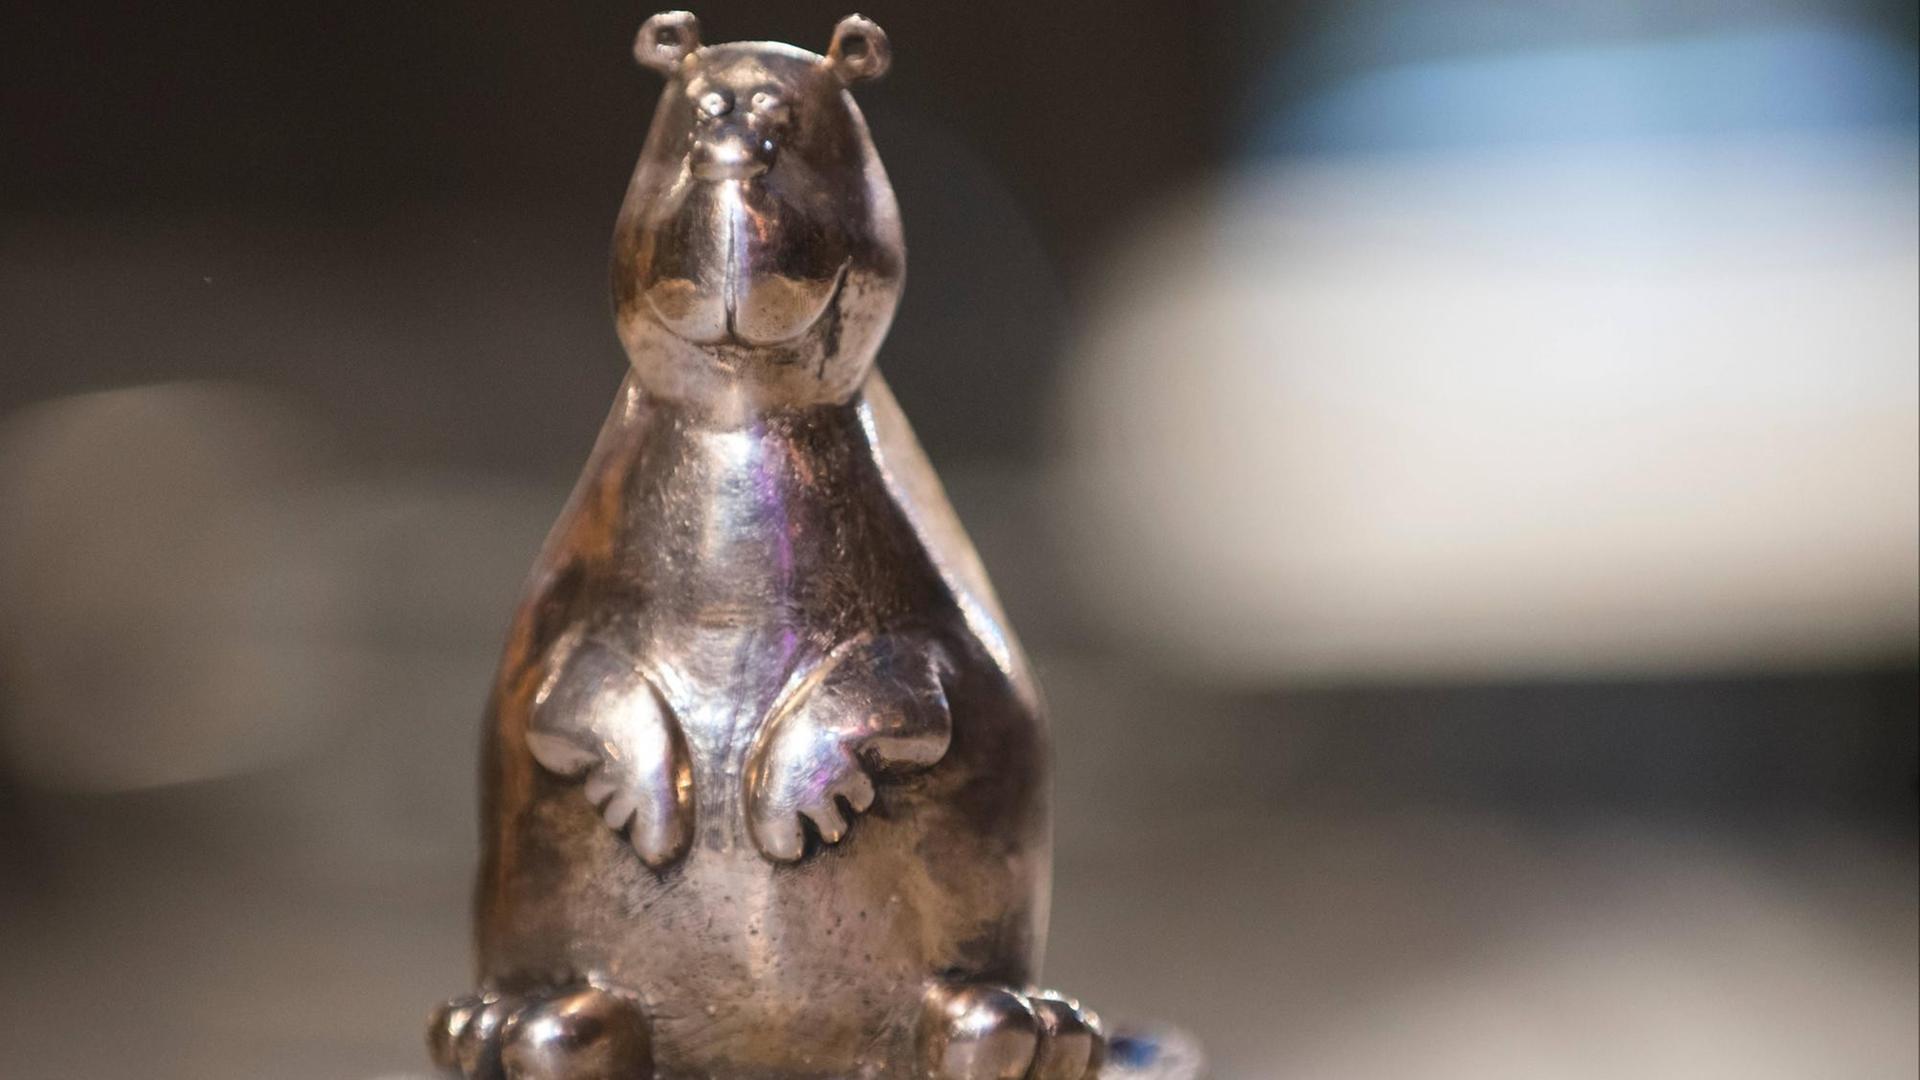 Der "Teddy Award", ein aufrecht sitzender Bär.